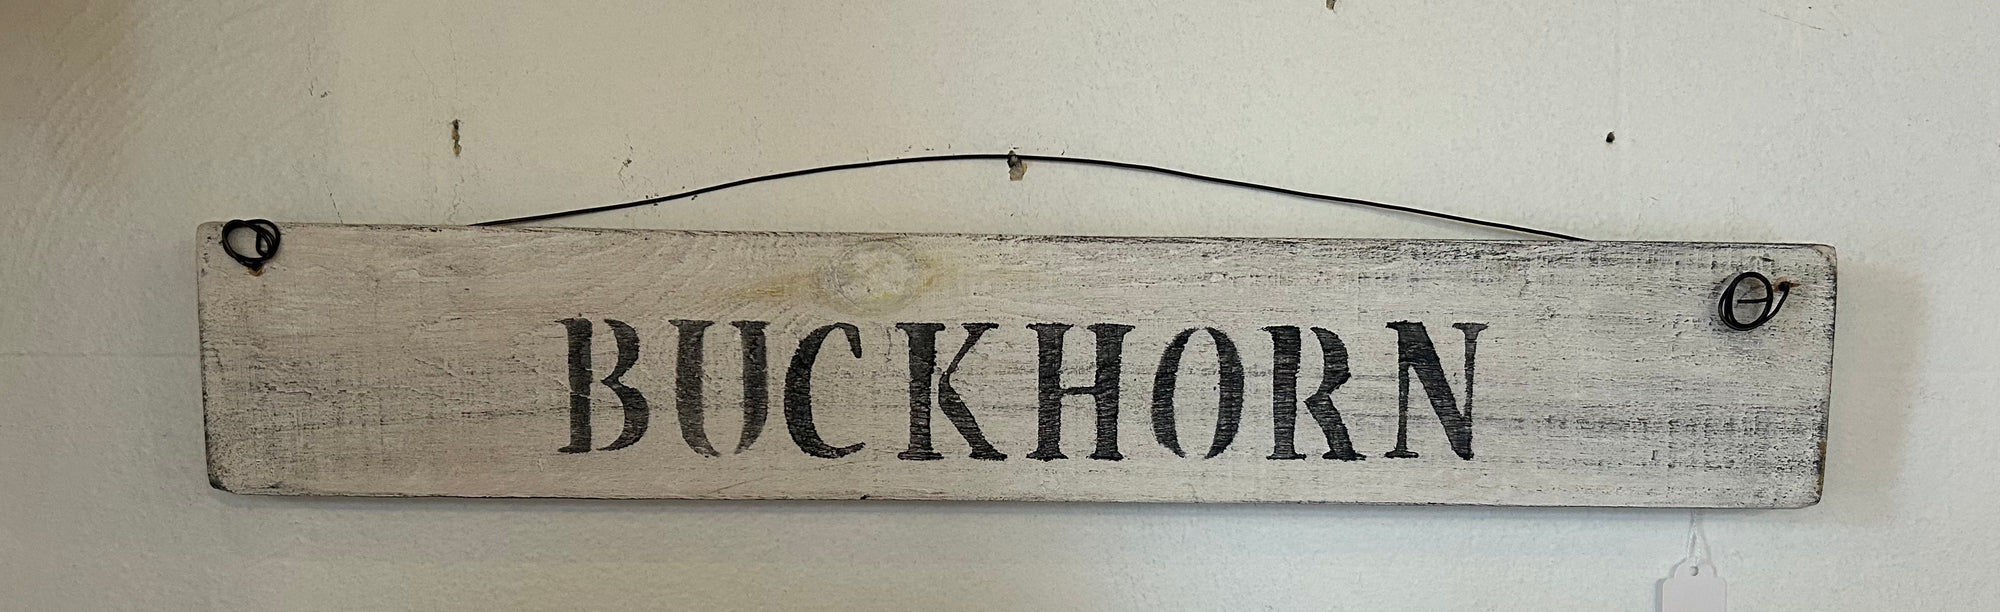 Buckhorn Sign